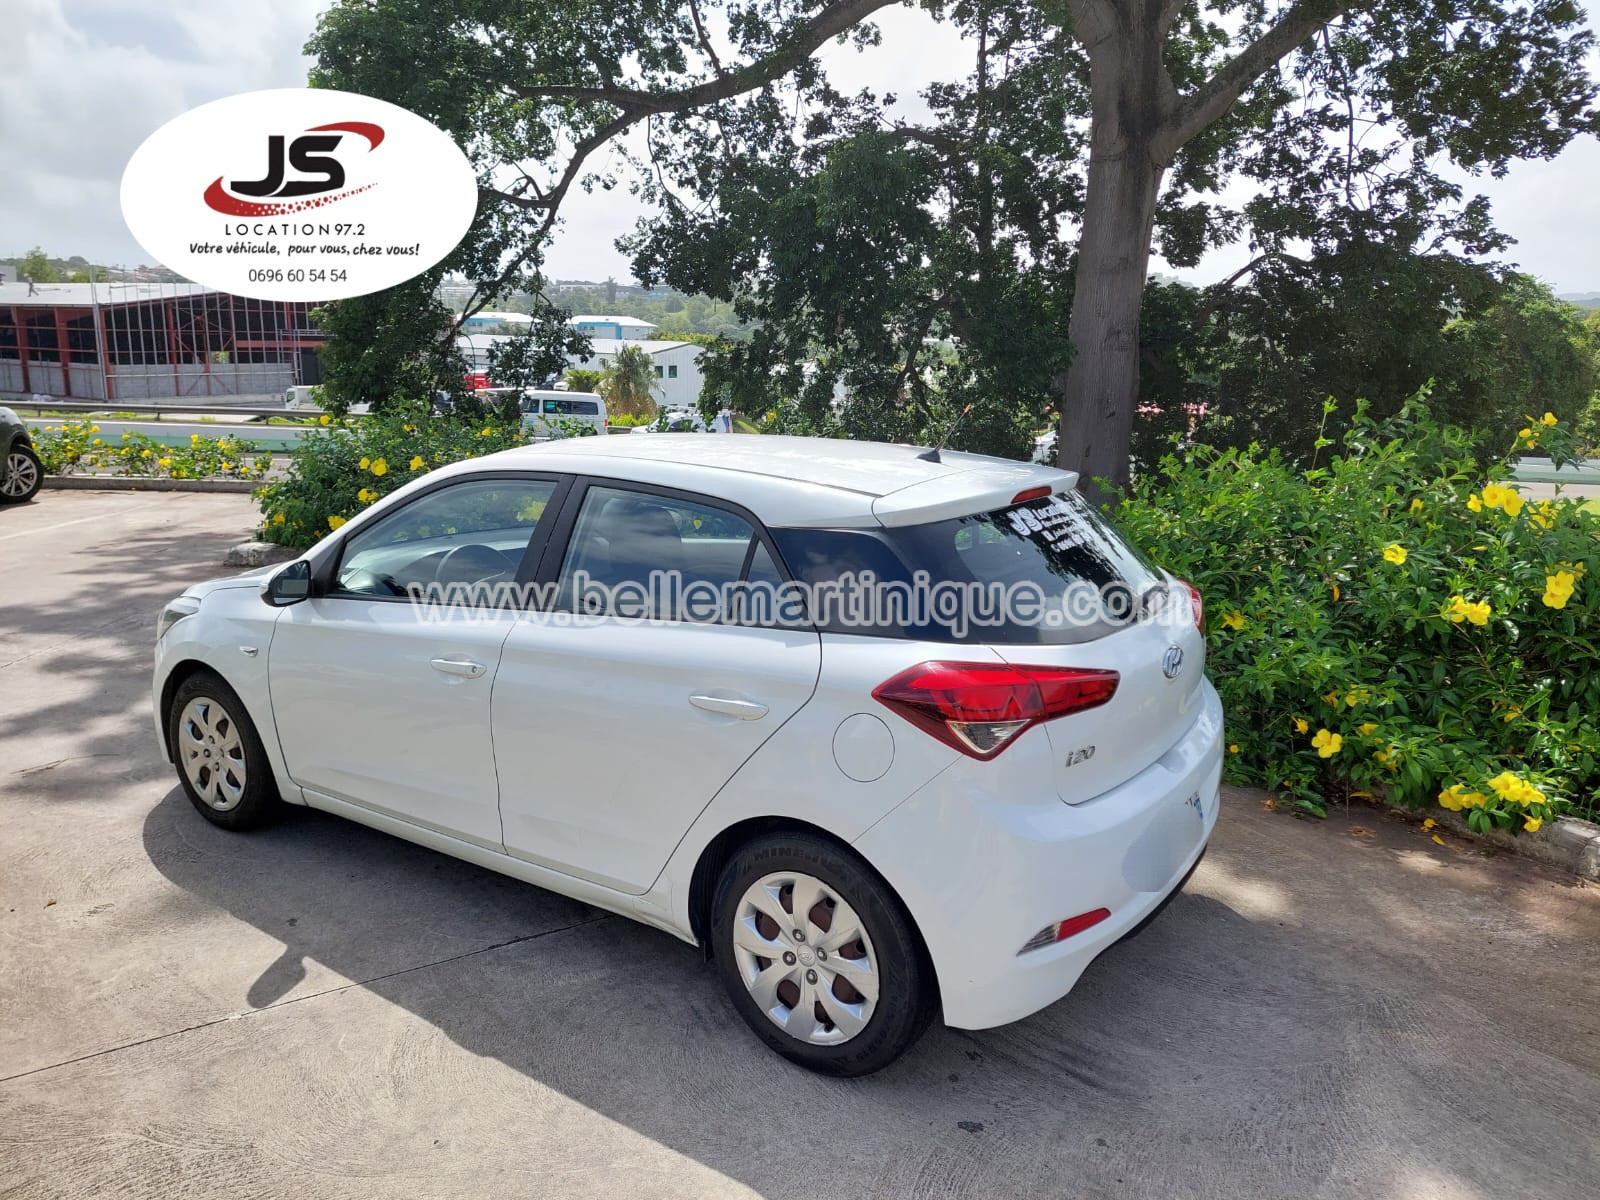 Hyundai JS LOCATION 97.2-Location de voiture-Martinique-Caraïbes